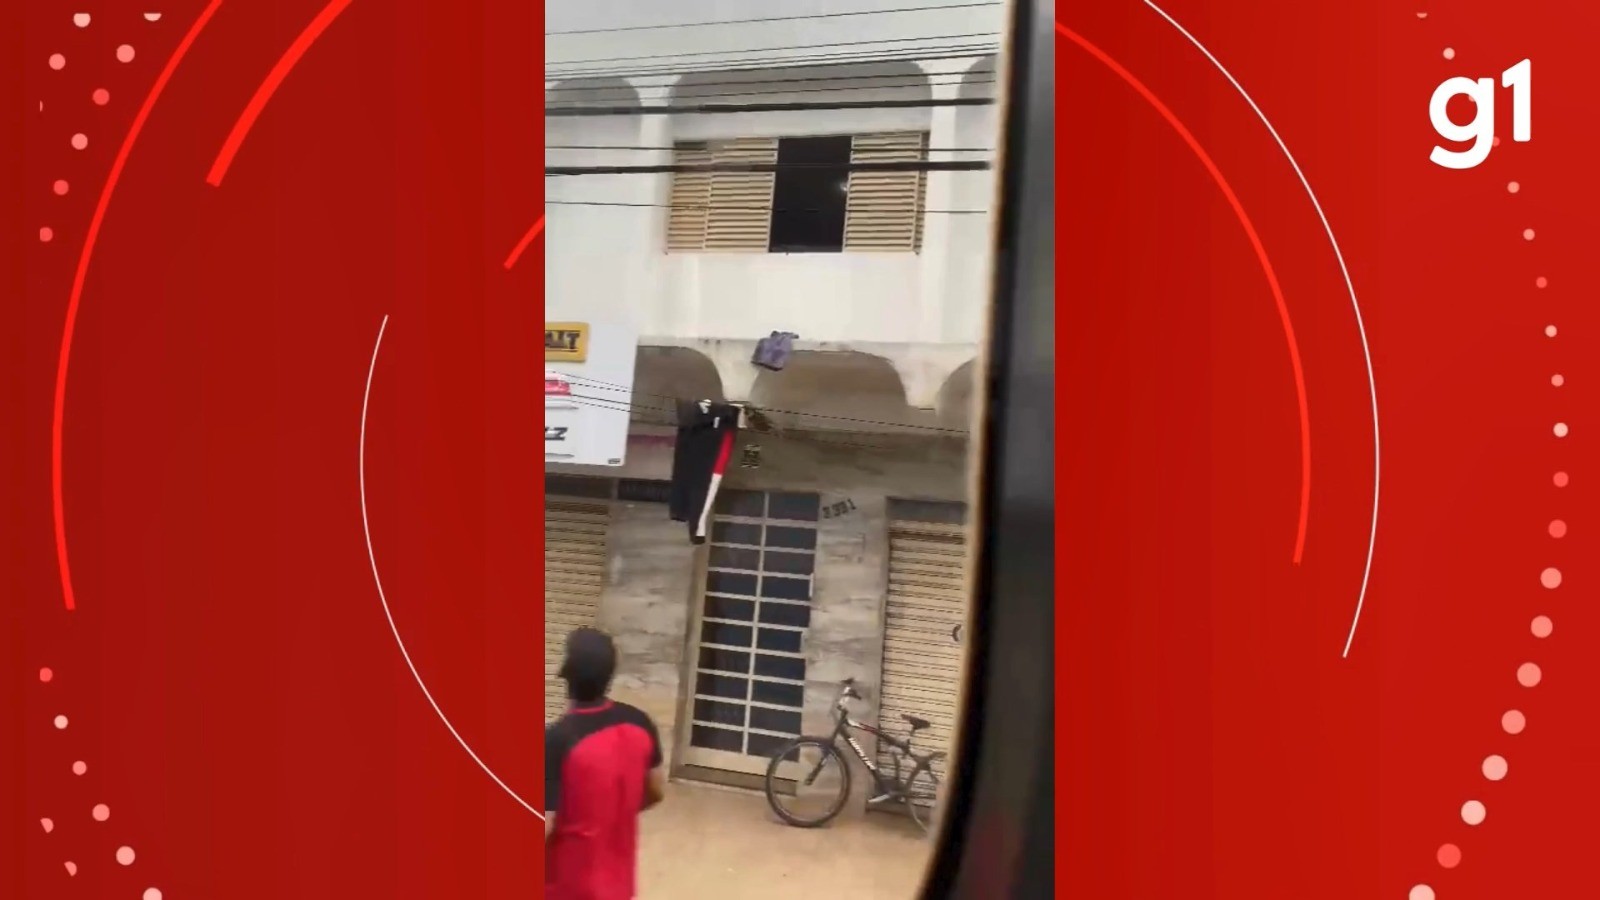 Cena de novela: vídeo mostra homem recolhendo roupas jogadas pela janela em MG